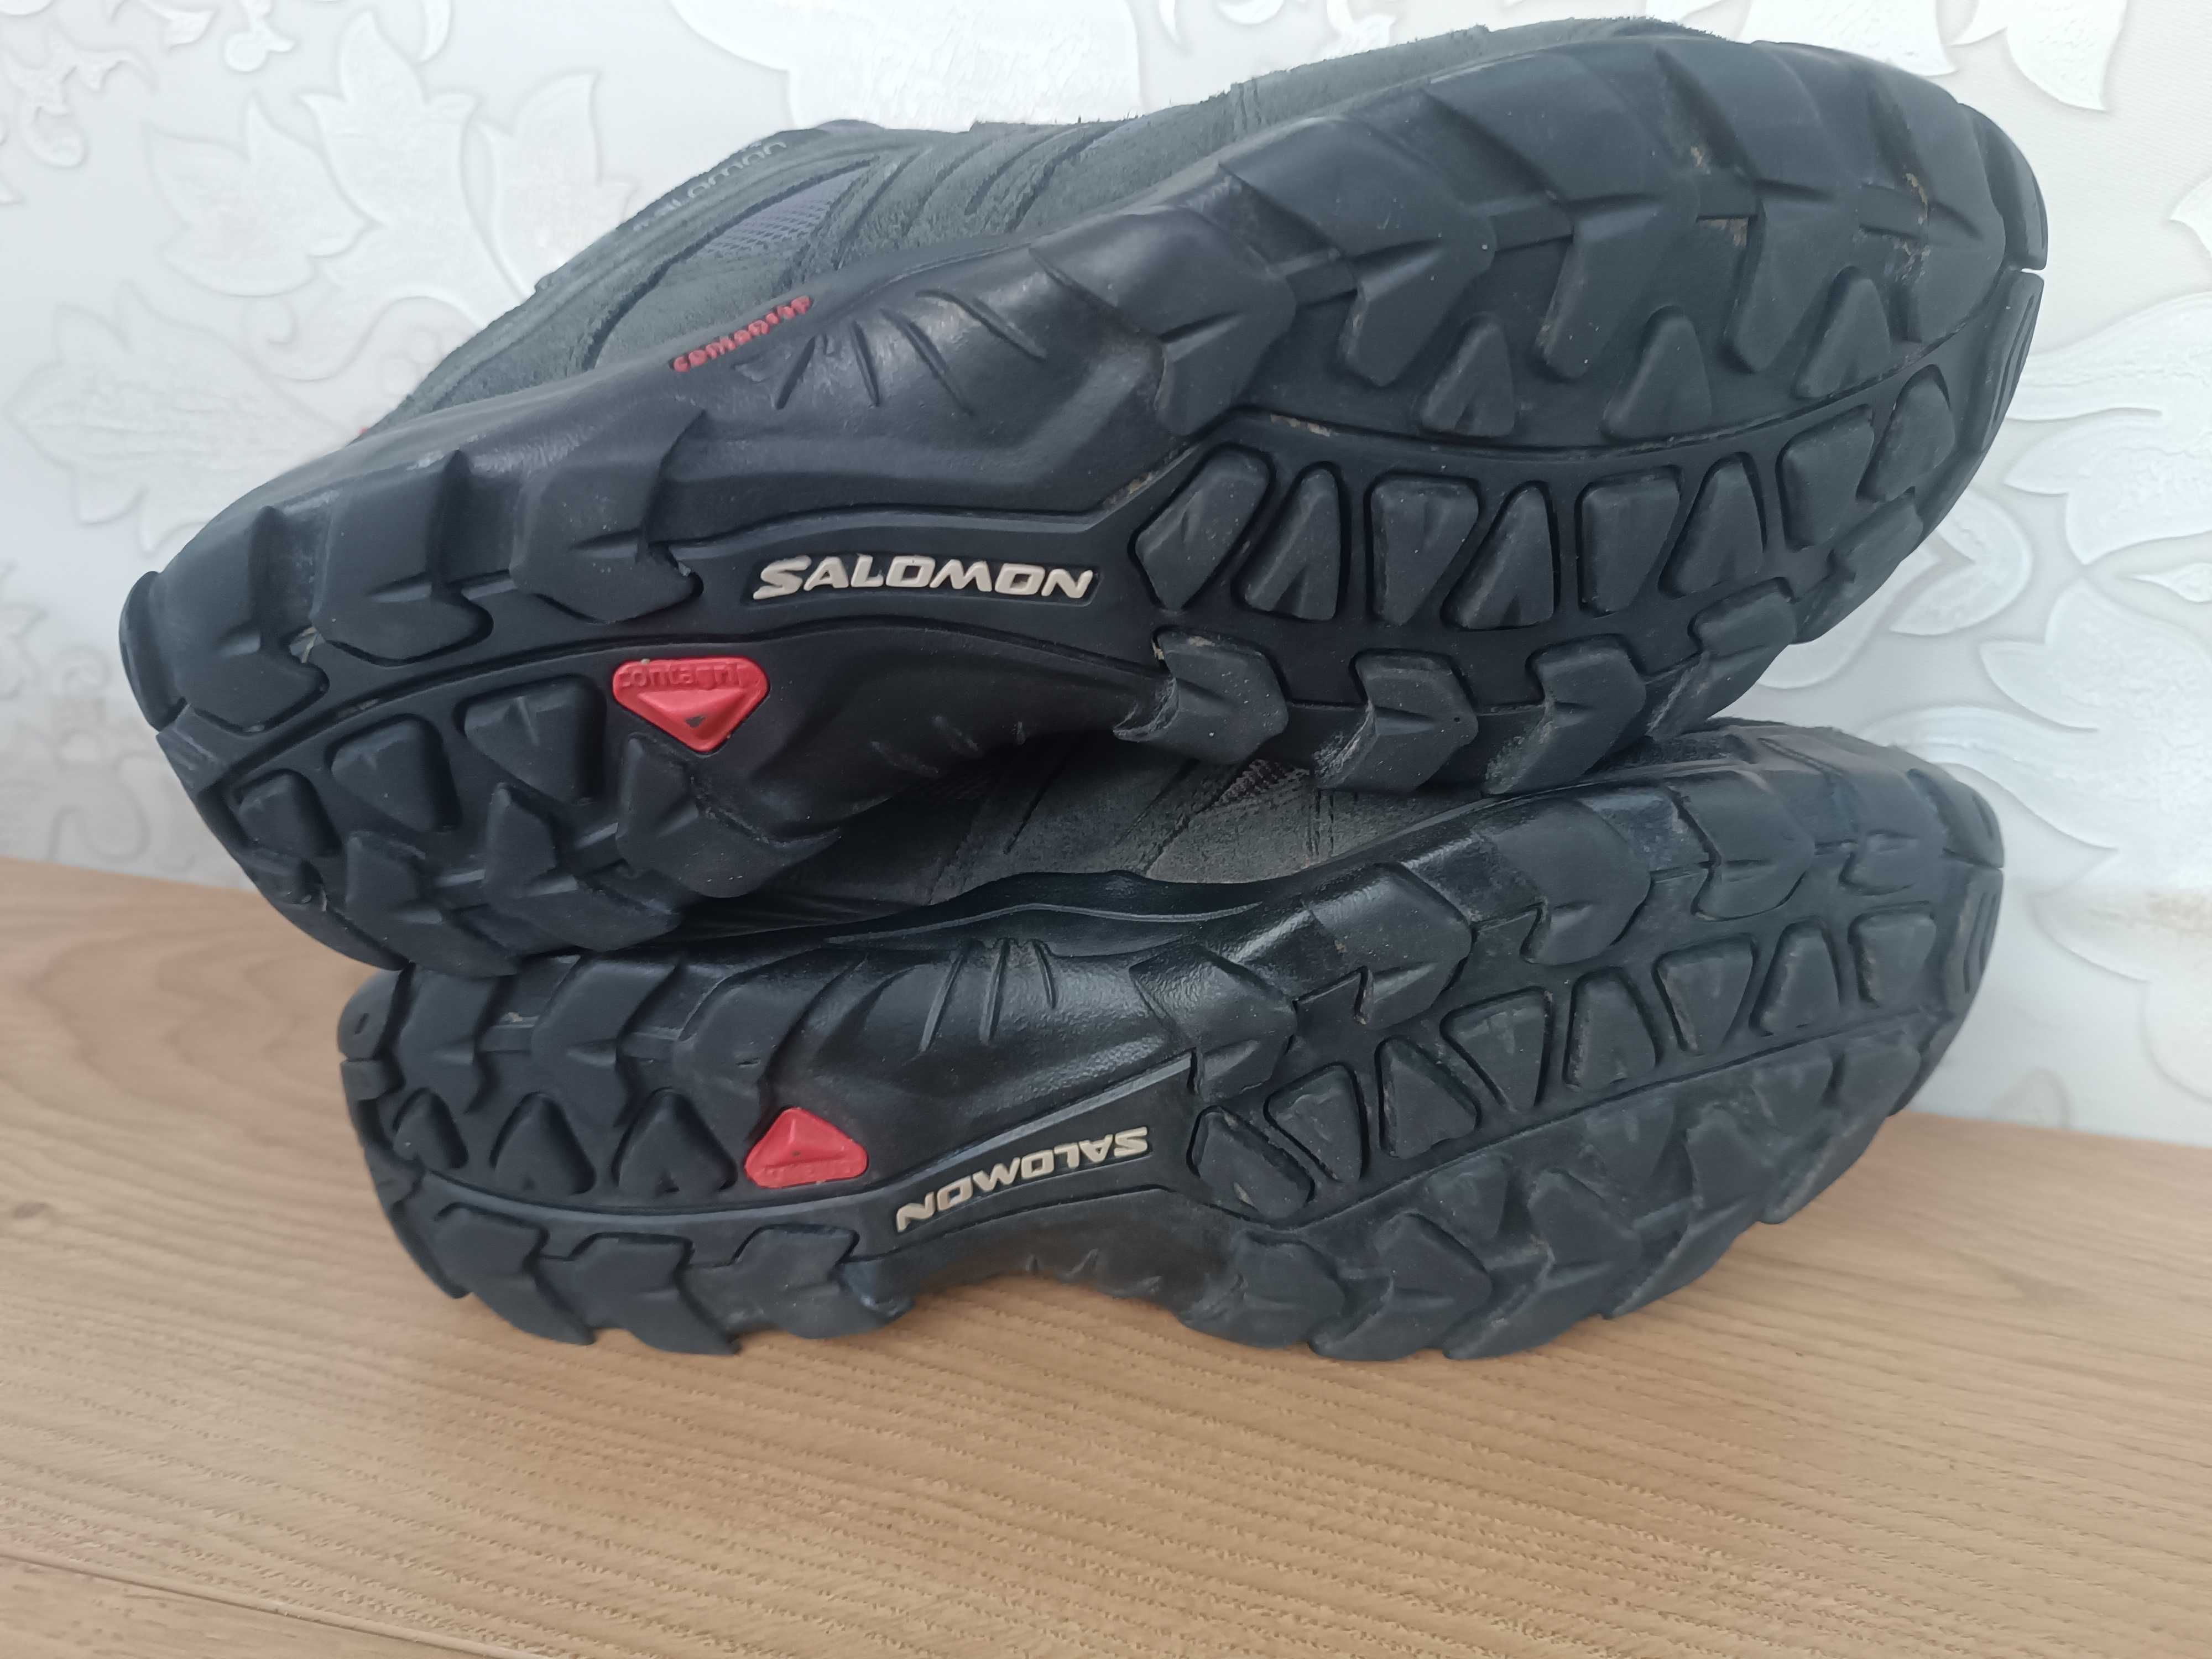 Кроссовки на весну Salomon XA Pro goreTex 43 27.5 см кожа